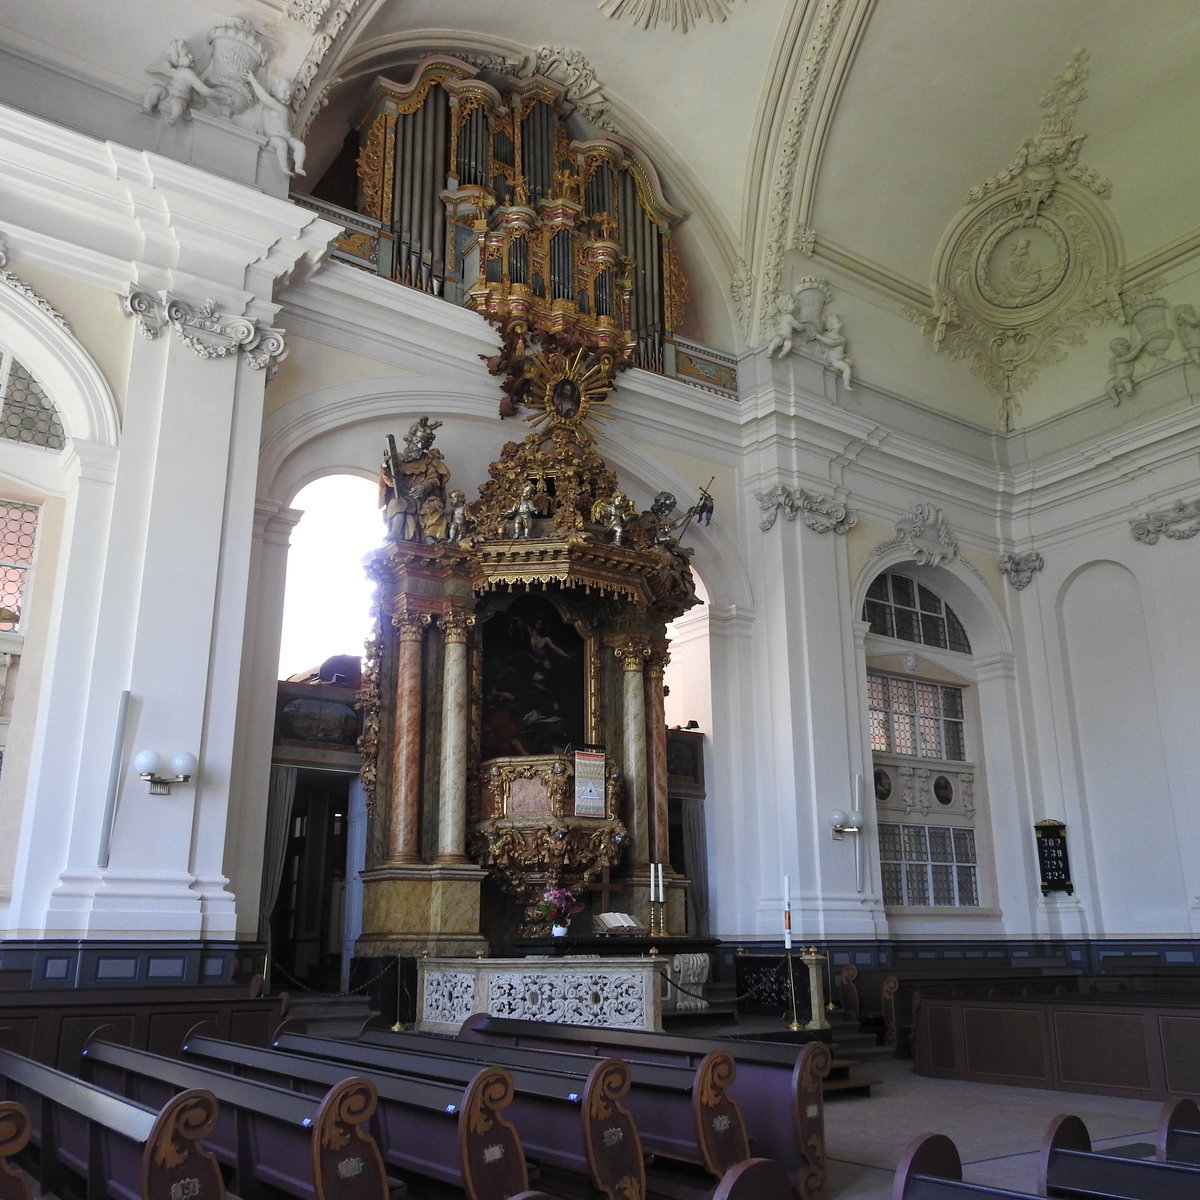 WEILBURG/LAHN-EV. SCHLOSSKIRCHE-INNENRAUM
Einen prchtigen evangelischen Kirchenbau findet man im SCHLOSS WEILBURG/LAHN,aus einer mittelalterlichen
Kirche durch Neubau 1713 fertiggestellt,mit Altar,Kanzel und Orgel in einer Achse angeordnet,
hier am 16.5.2017....